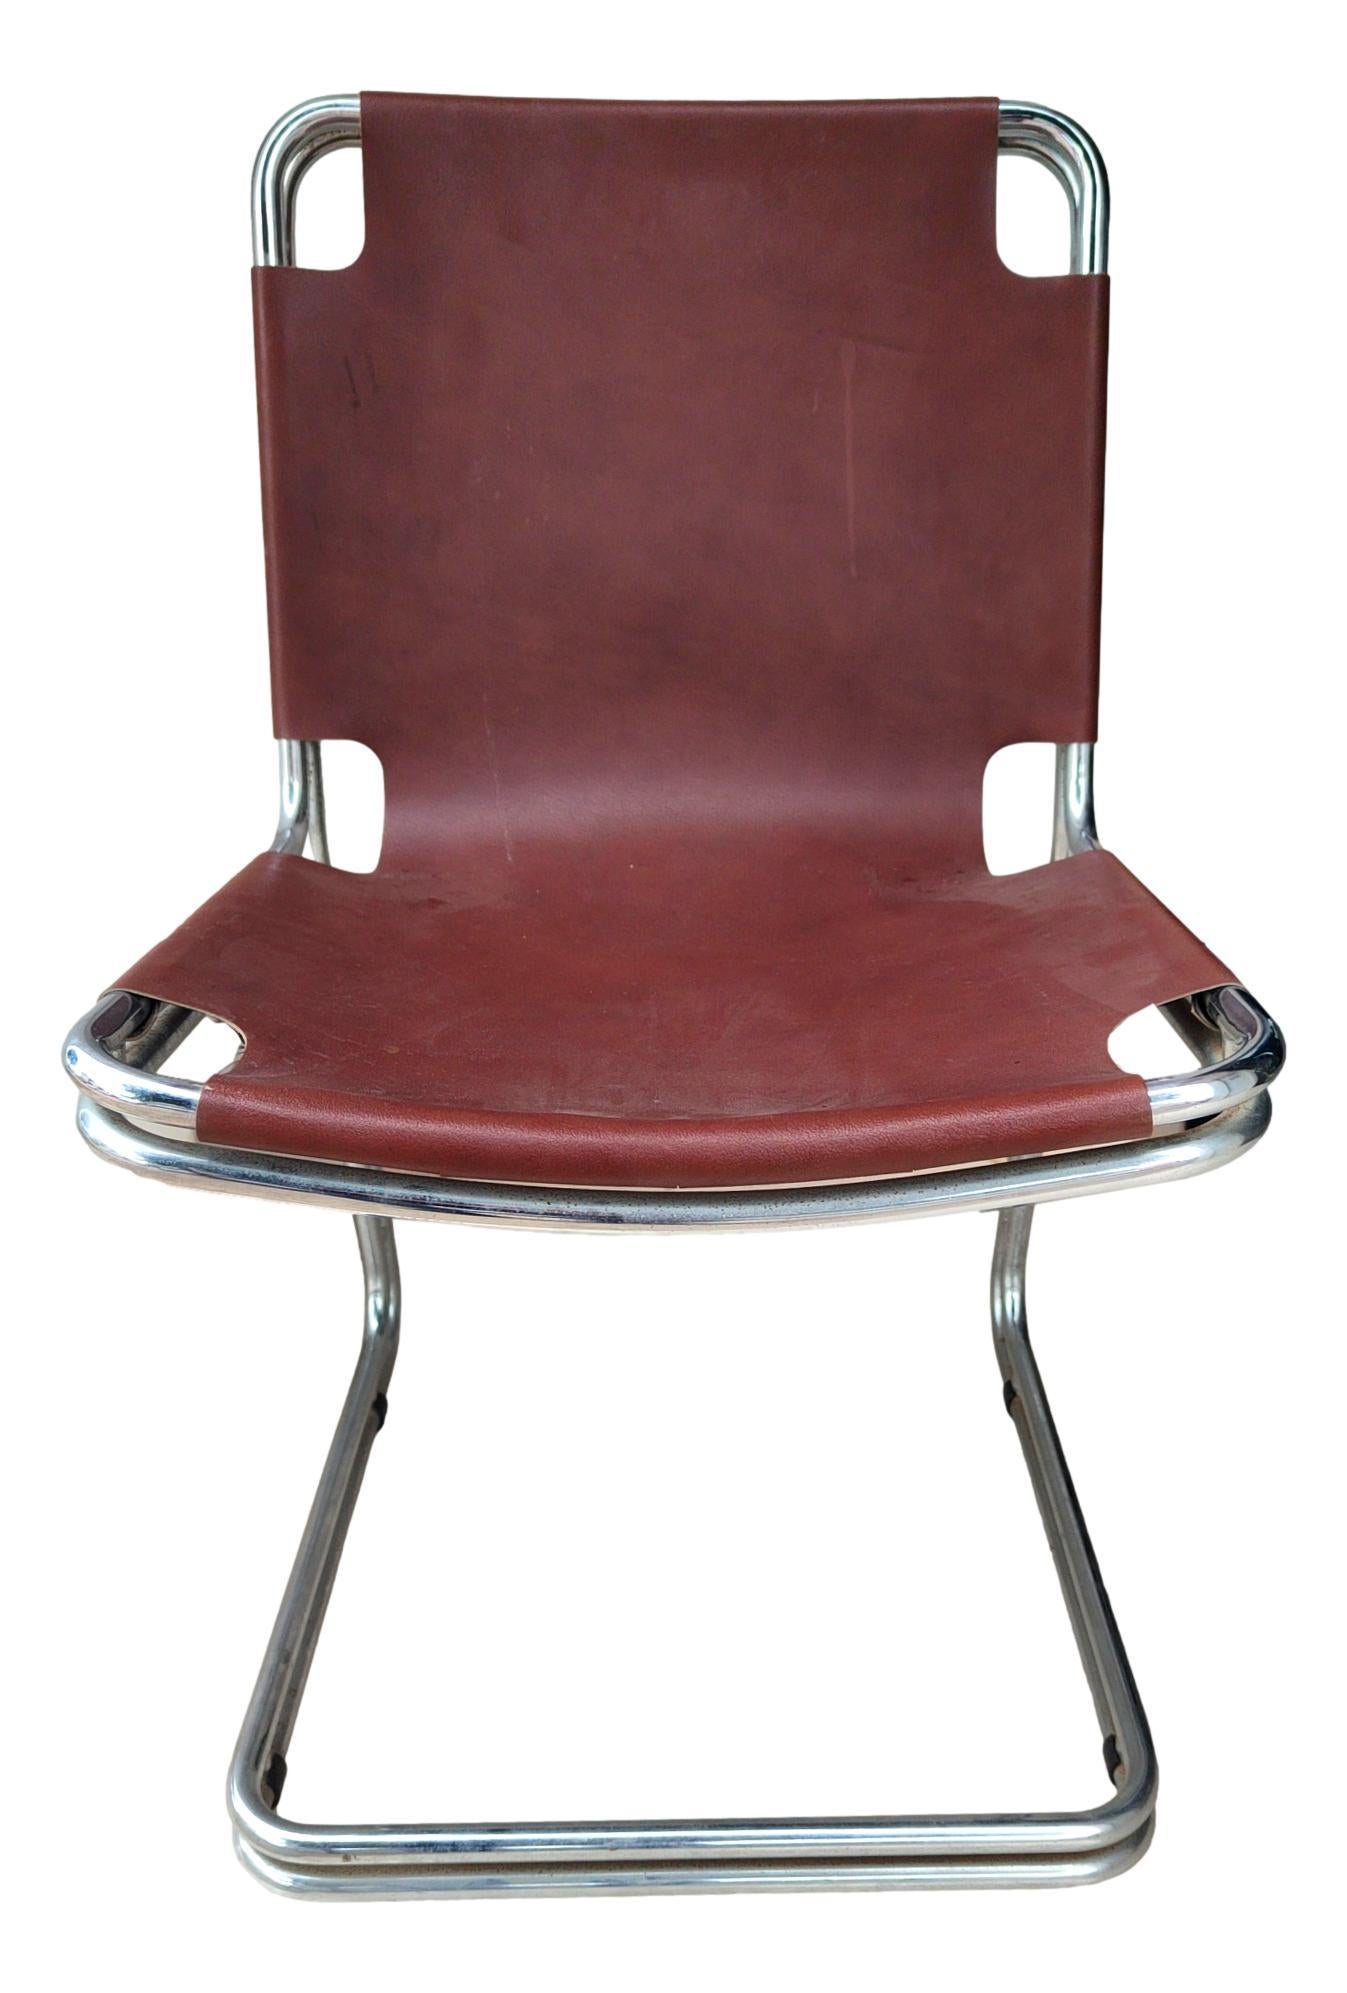 lot de quatre chaises originales de fabrication italienne des années 1970, conçues dans le style de Pascal Mourgue ou Gastone Rinaldi,  en métal et en cuir brun. 
Ils mesurent 85 cm de hauteur, 45 cm de largeur, 55 cm de profondeur et 45 cm de